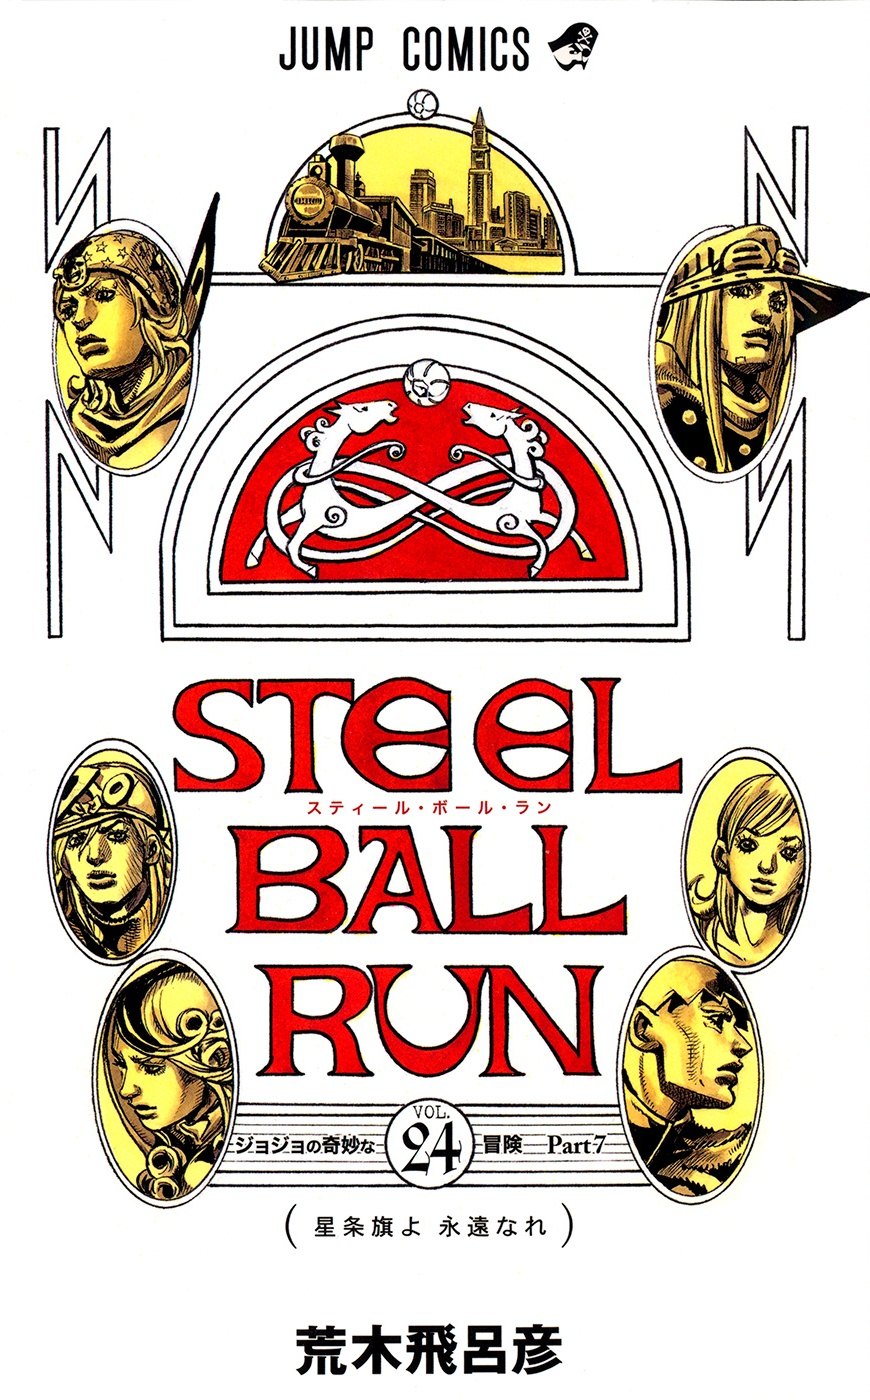 Descargar manga de Jojo’s Bizarre Adventure Steel Ball Run en PDF por mega español